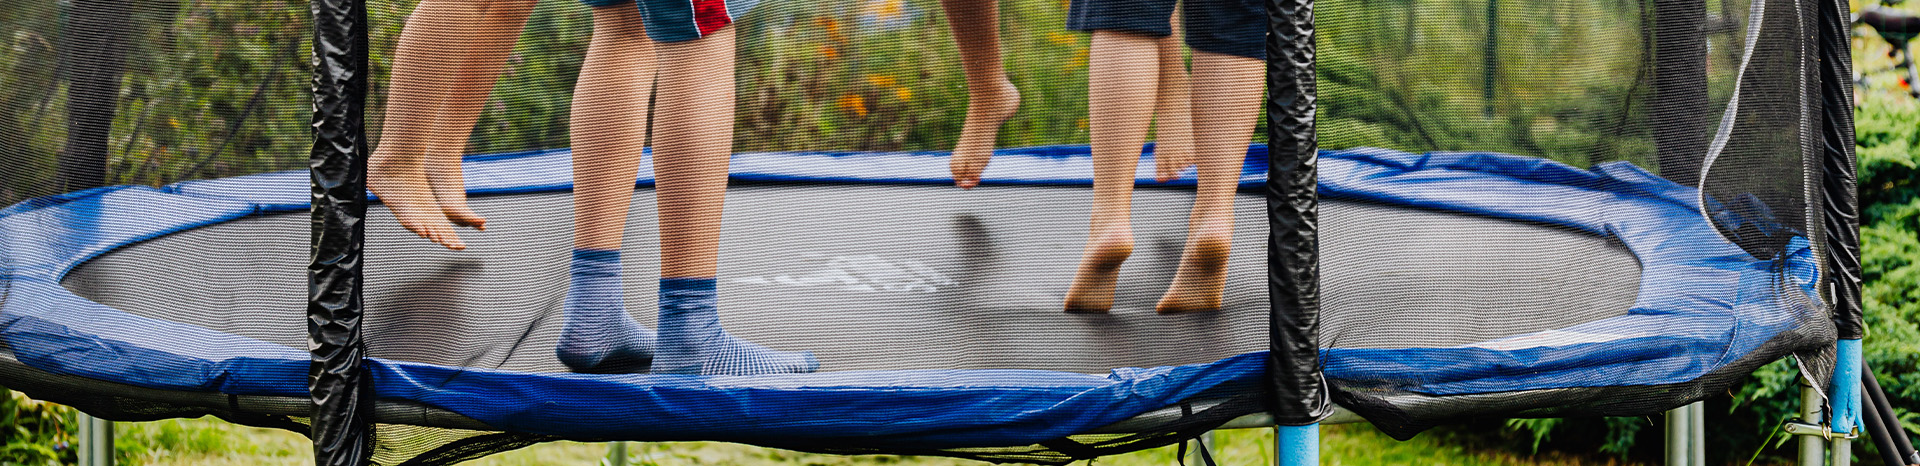 Hoe voorkom je letselschade door trampolines | LetselPro